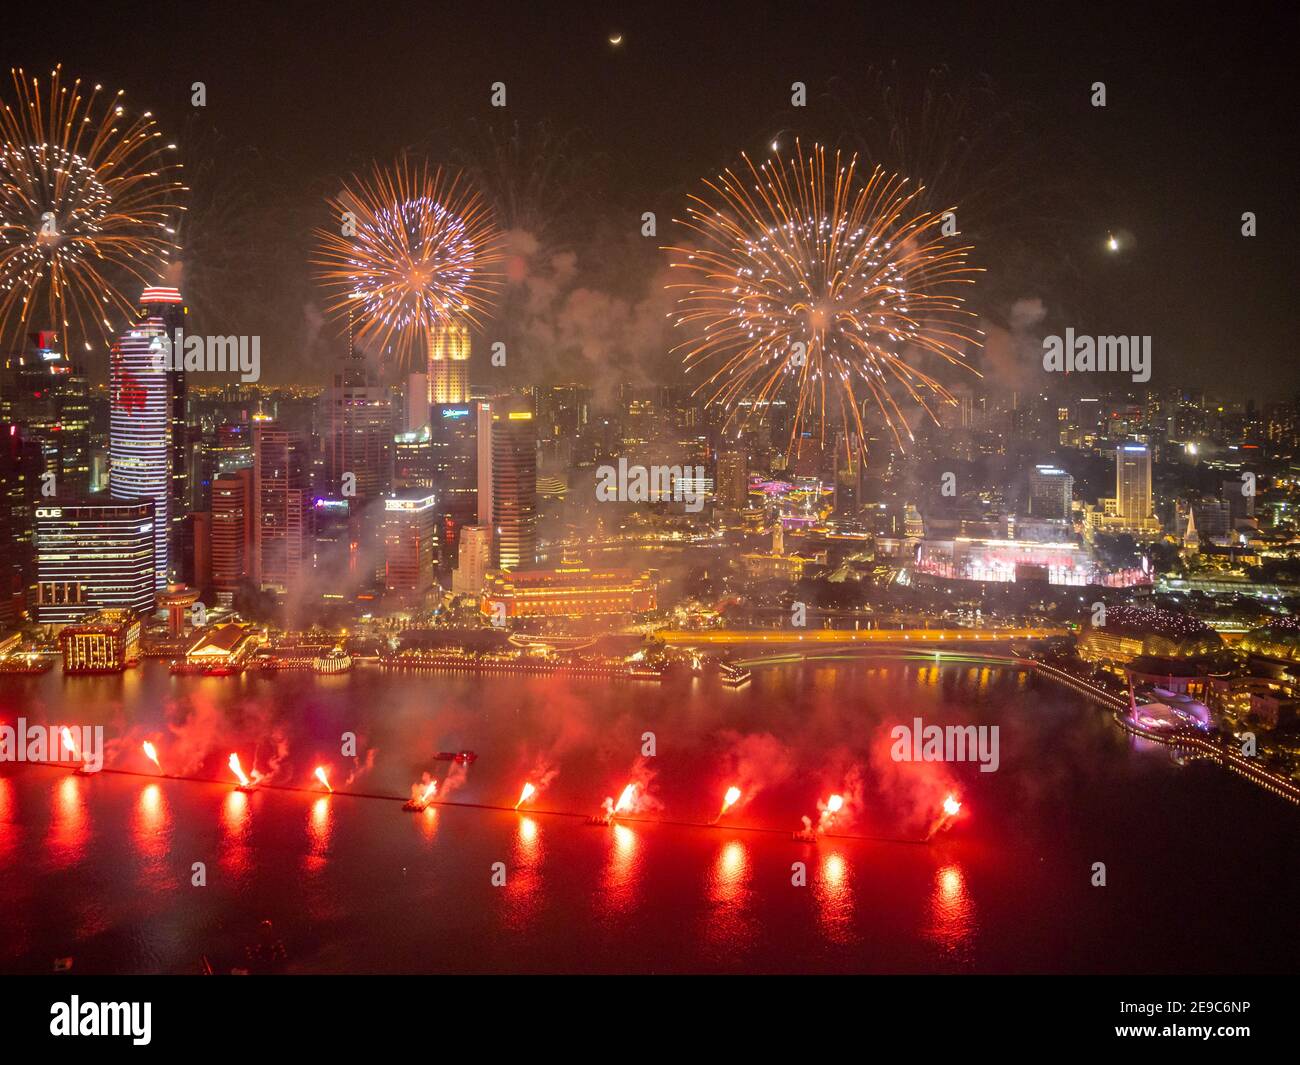 Singapore Independence day, Marina bay sand fireworks celebrations Stock Photo